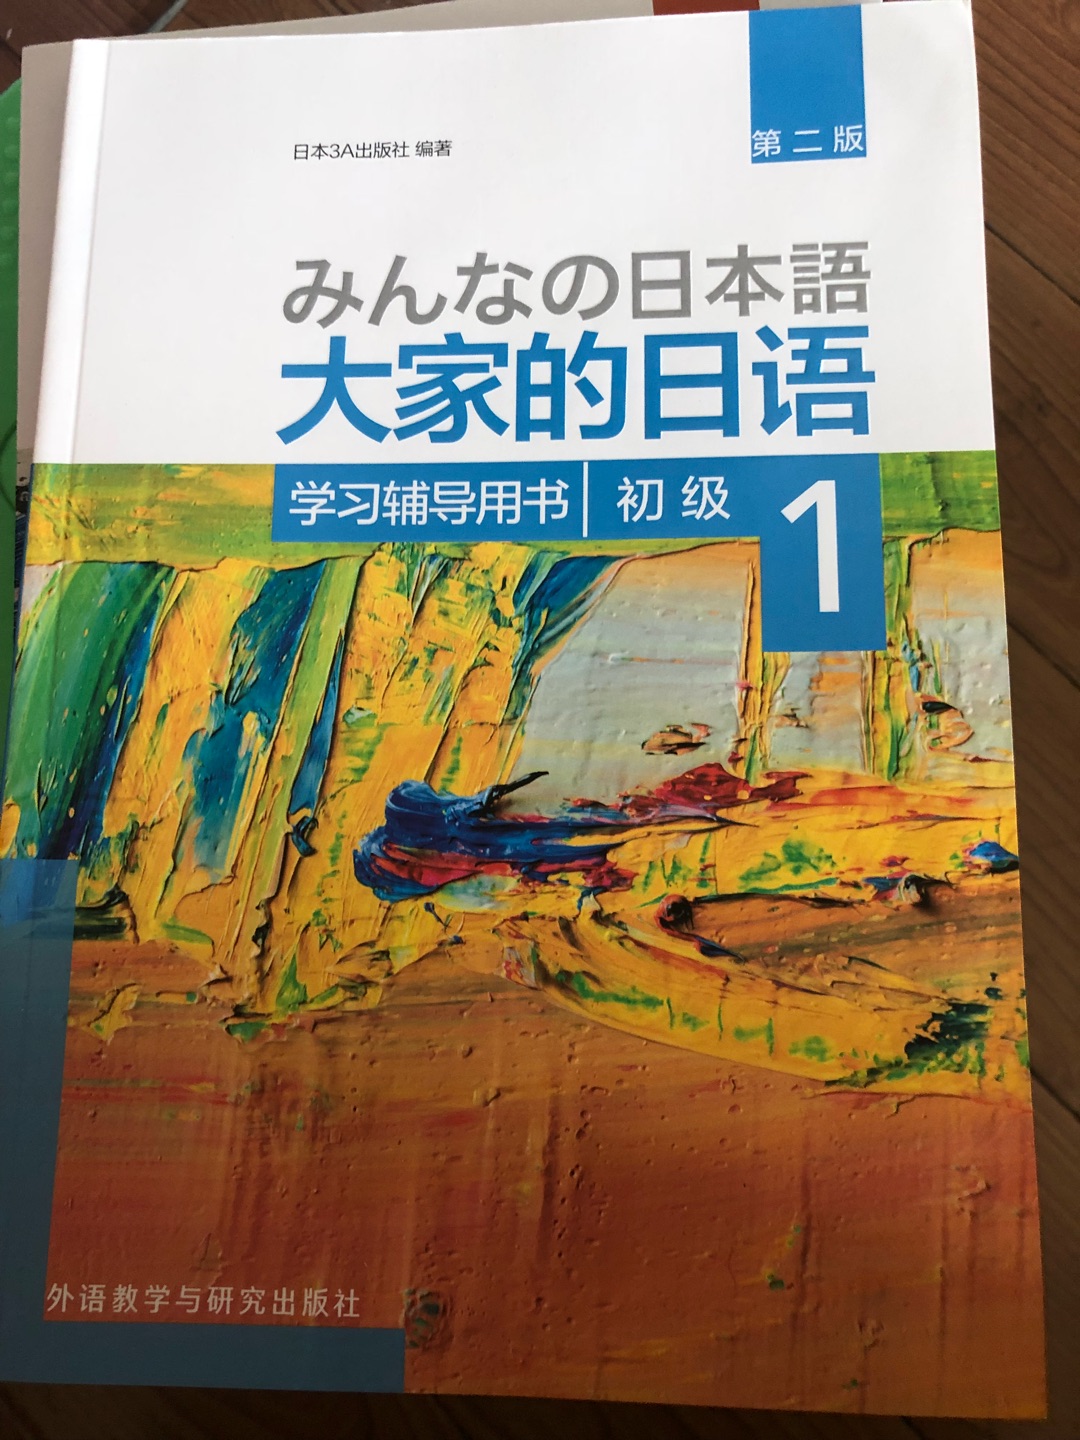 教材很不错，日语专业的推荐的教材。适合初学者。不过包装太差了，塑封膜都破了，书弄皱了，也都弄脏了…差评…对于强迫症真是不能忍…